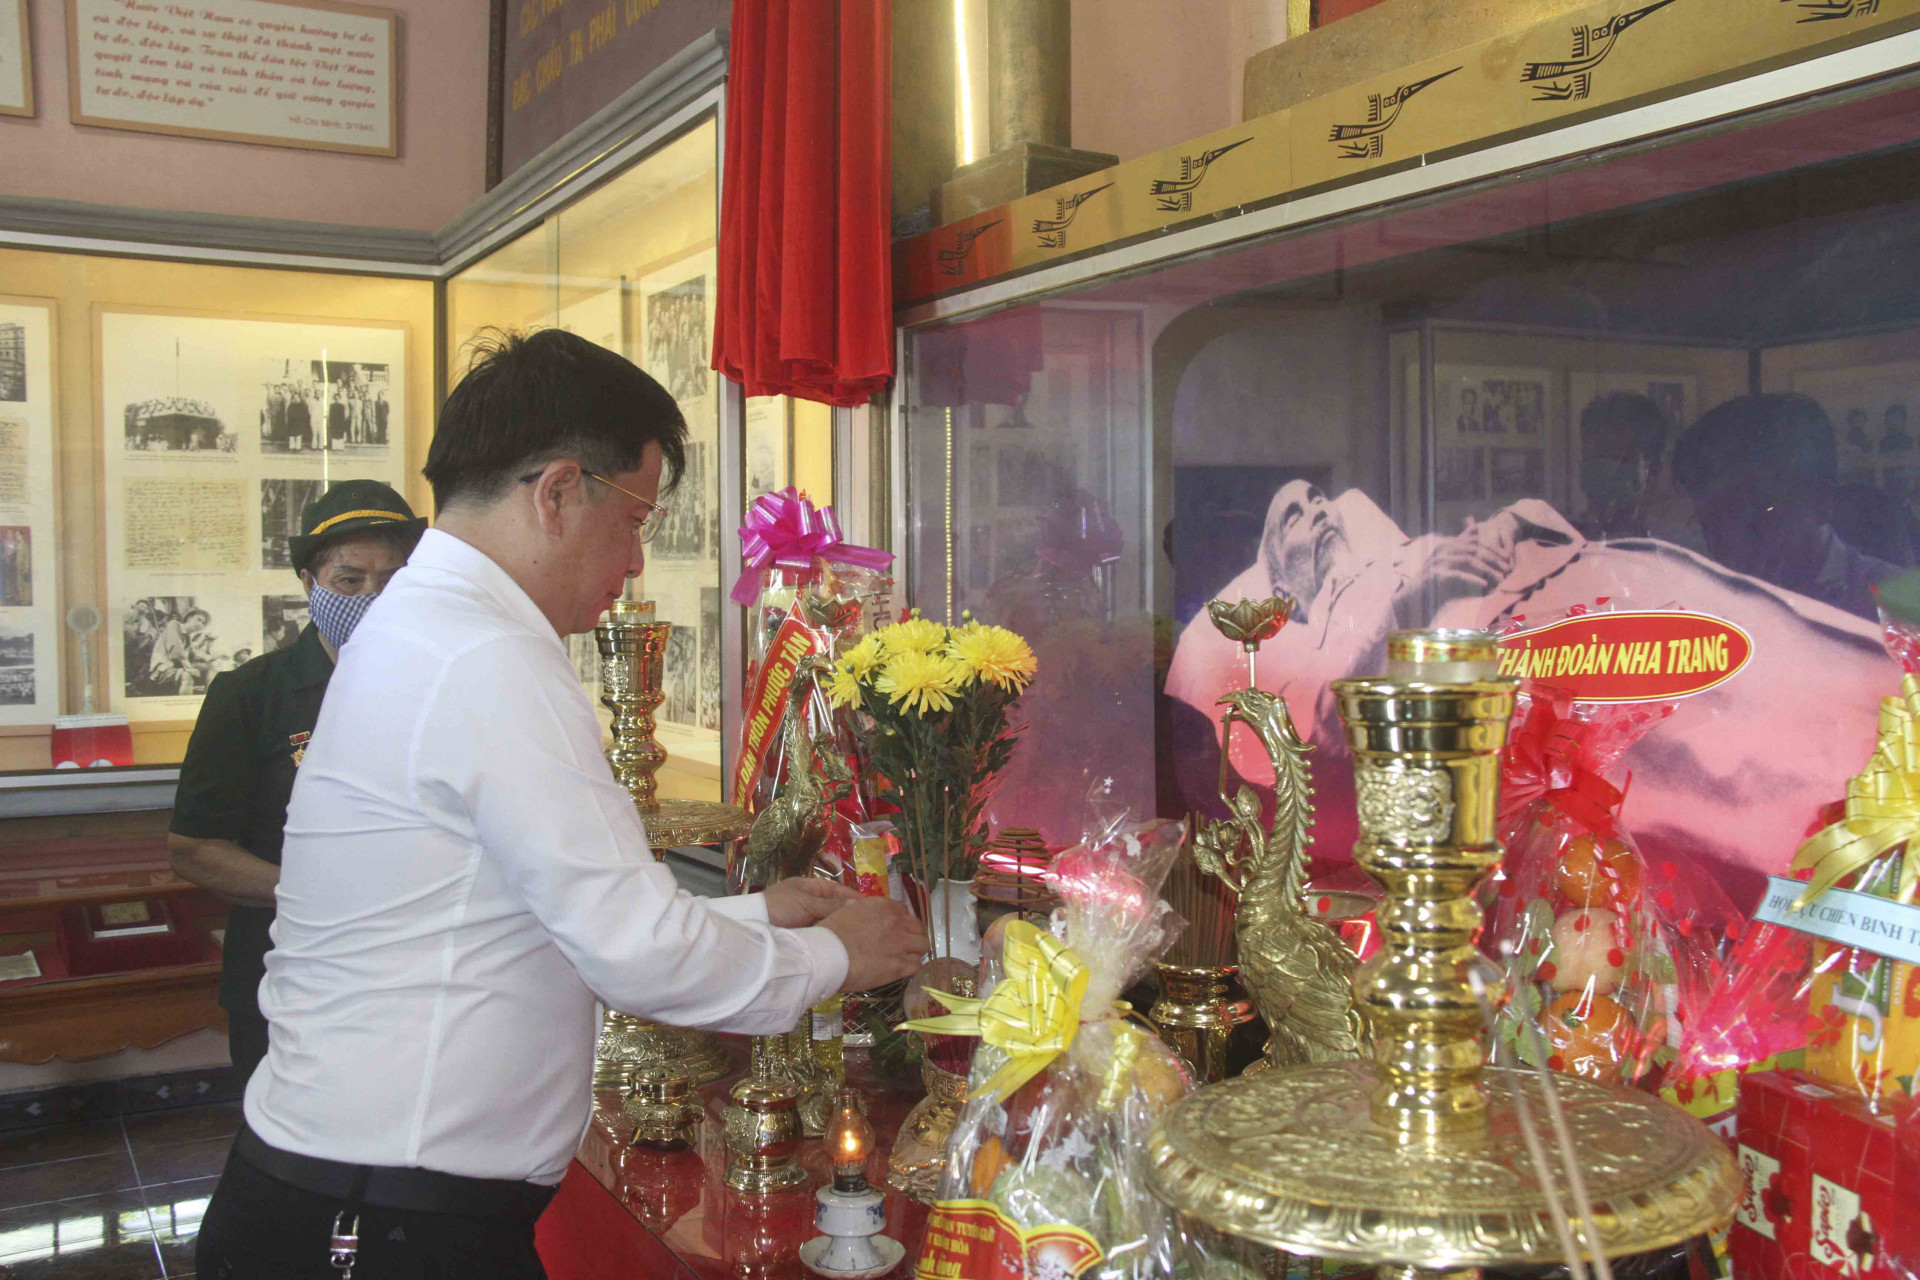  Ông Hồ Văn Mừng dâng hương tưởng nhớ công ơn của Chủ tịch Hồ Chí Minh tại Khu tưởng niệm Chủ tịch Hồ Chí Minh của gia đình ông Bùi Xuân Phước